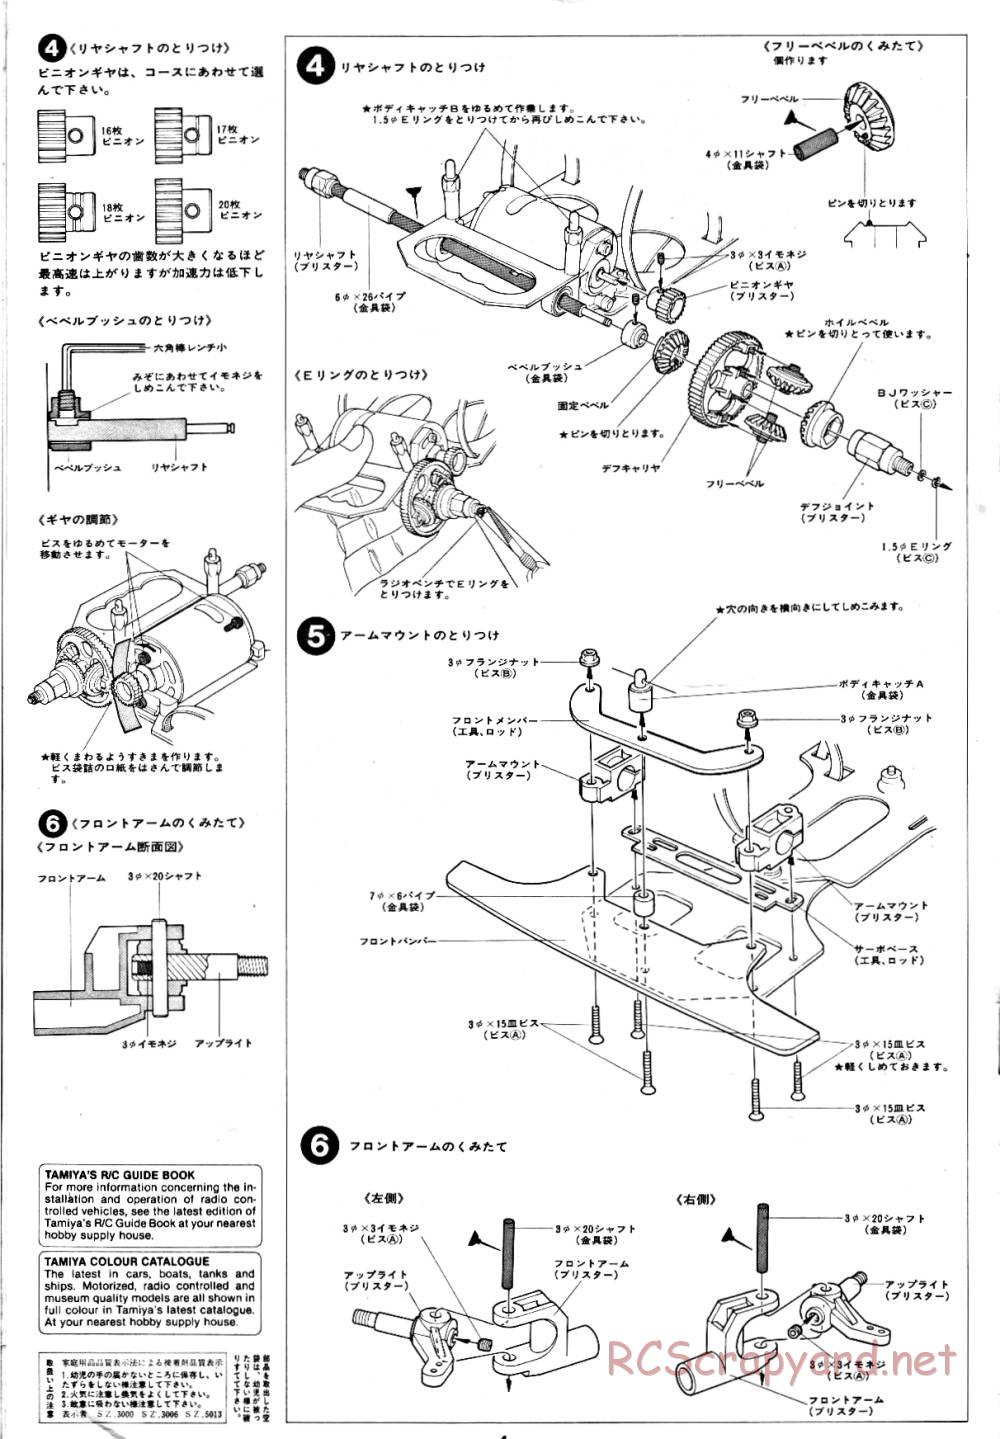 Tamiya - Tornado - RM MK.3 - 58032 - Manual - Page 4